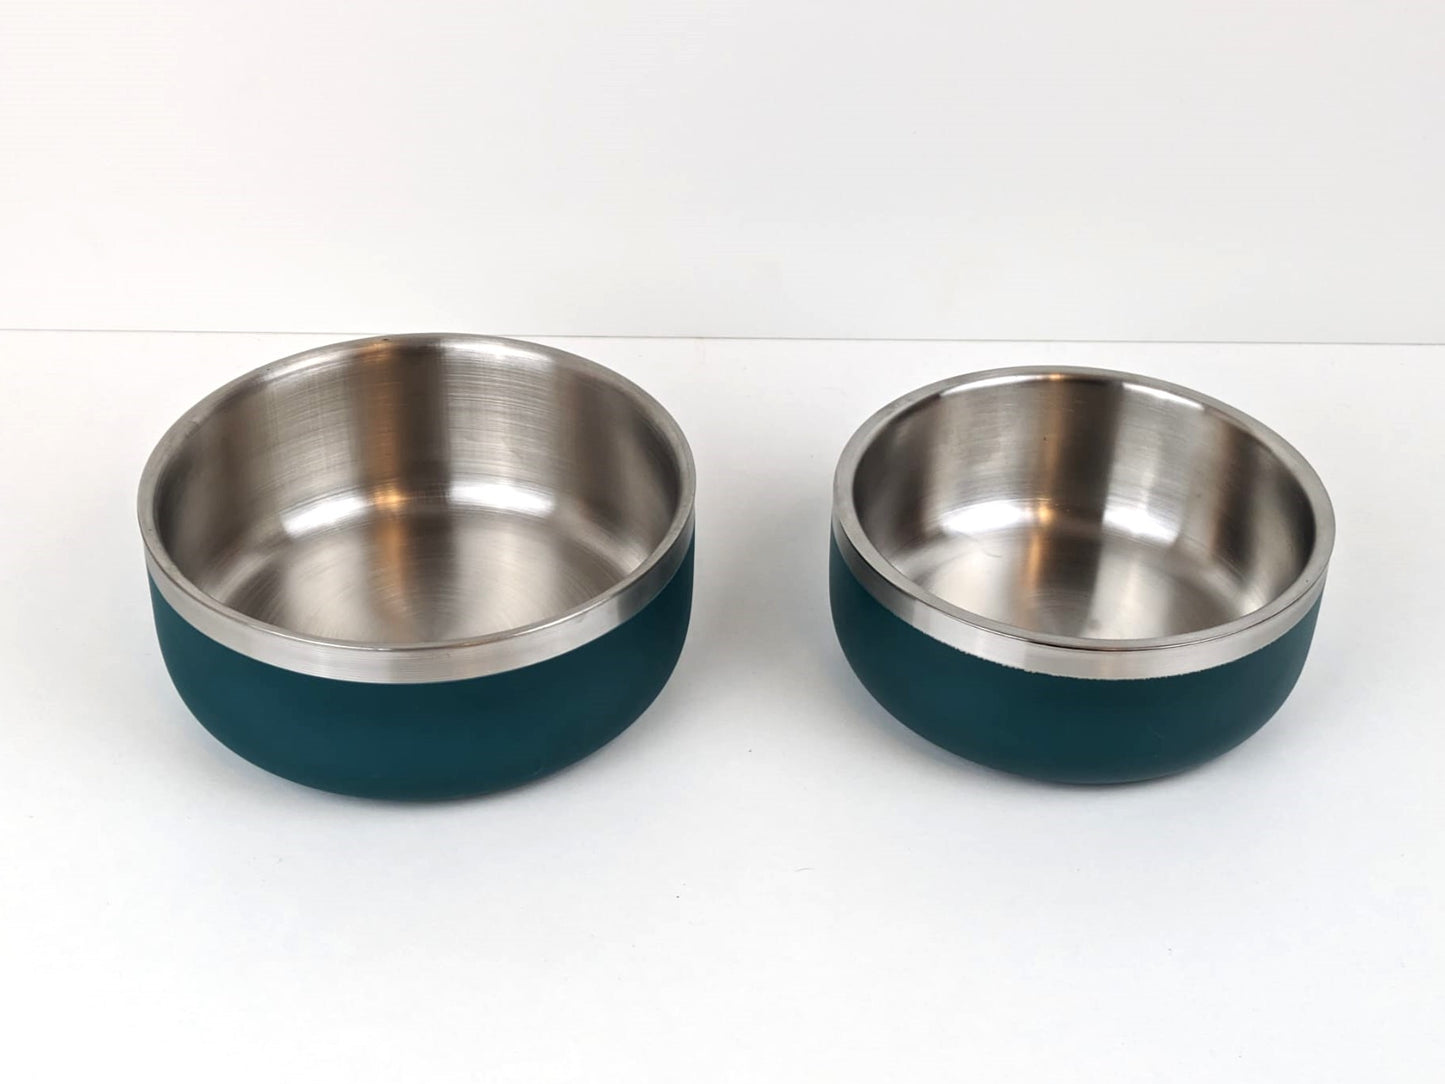 Teal - Stainless Steel Bowls (Metal)